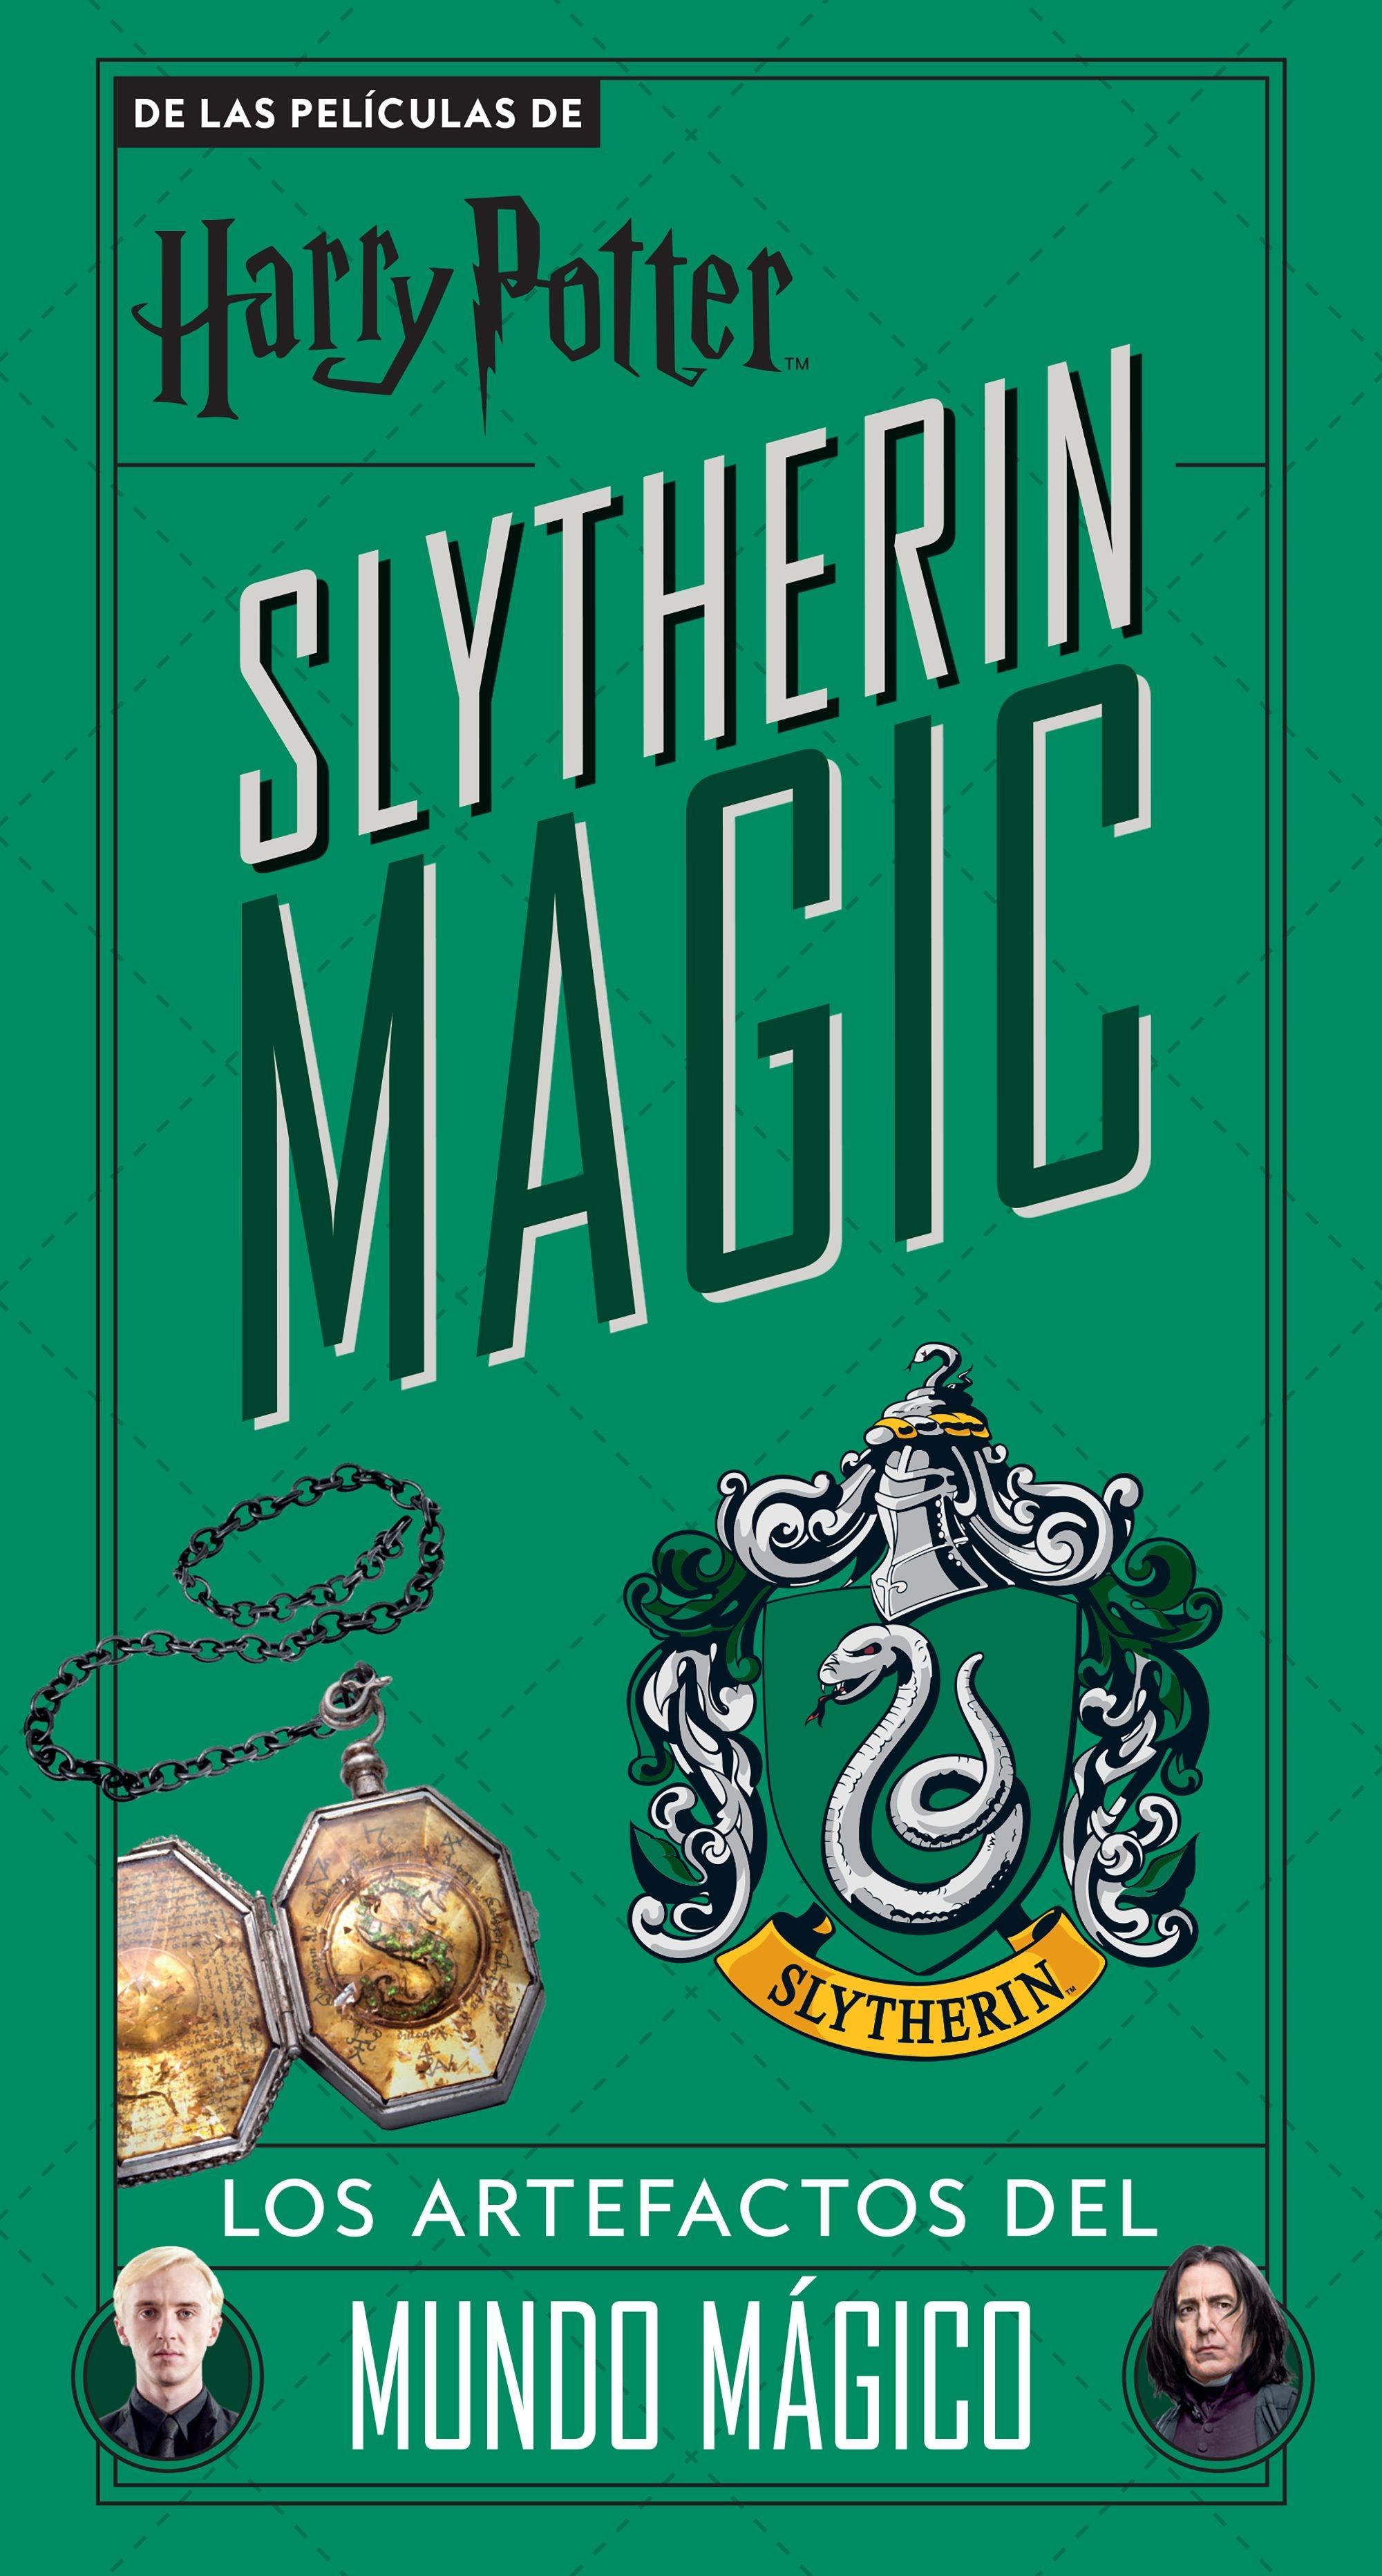 Harry Potter Slytherin Magic "Los artefactos del mundo mágico (verde)"